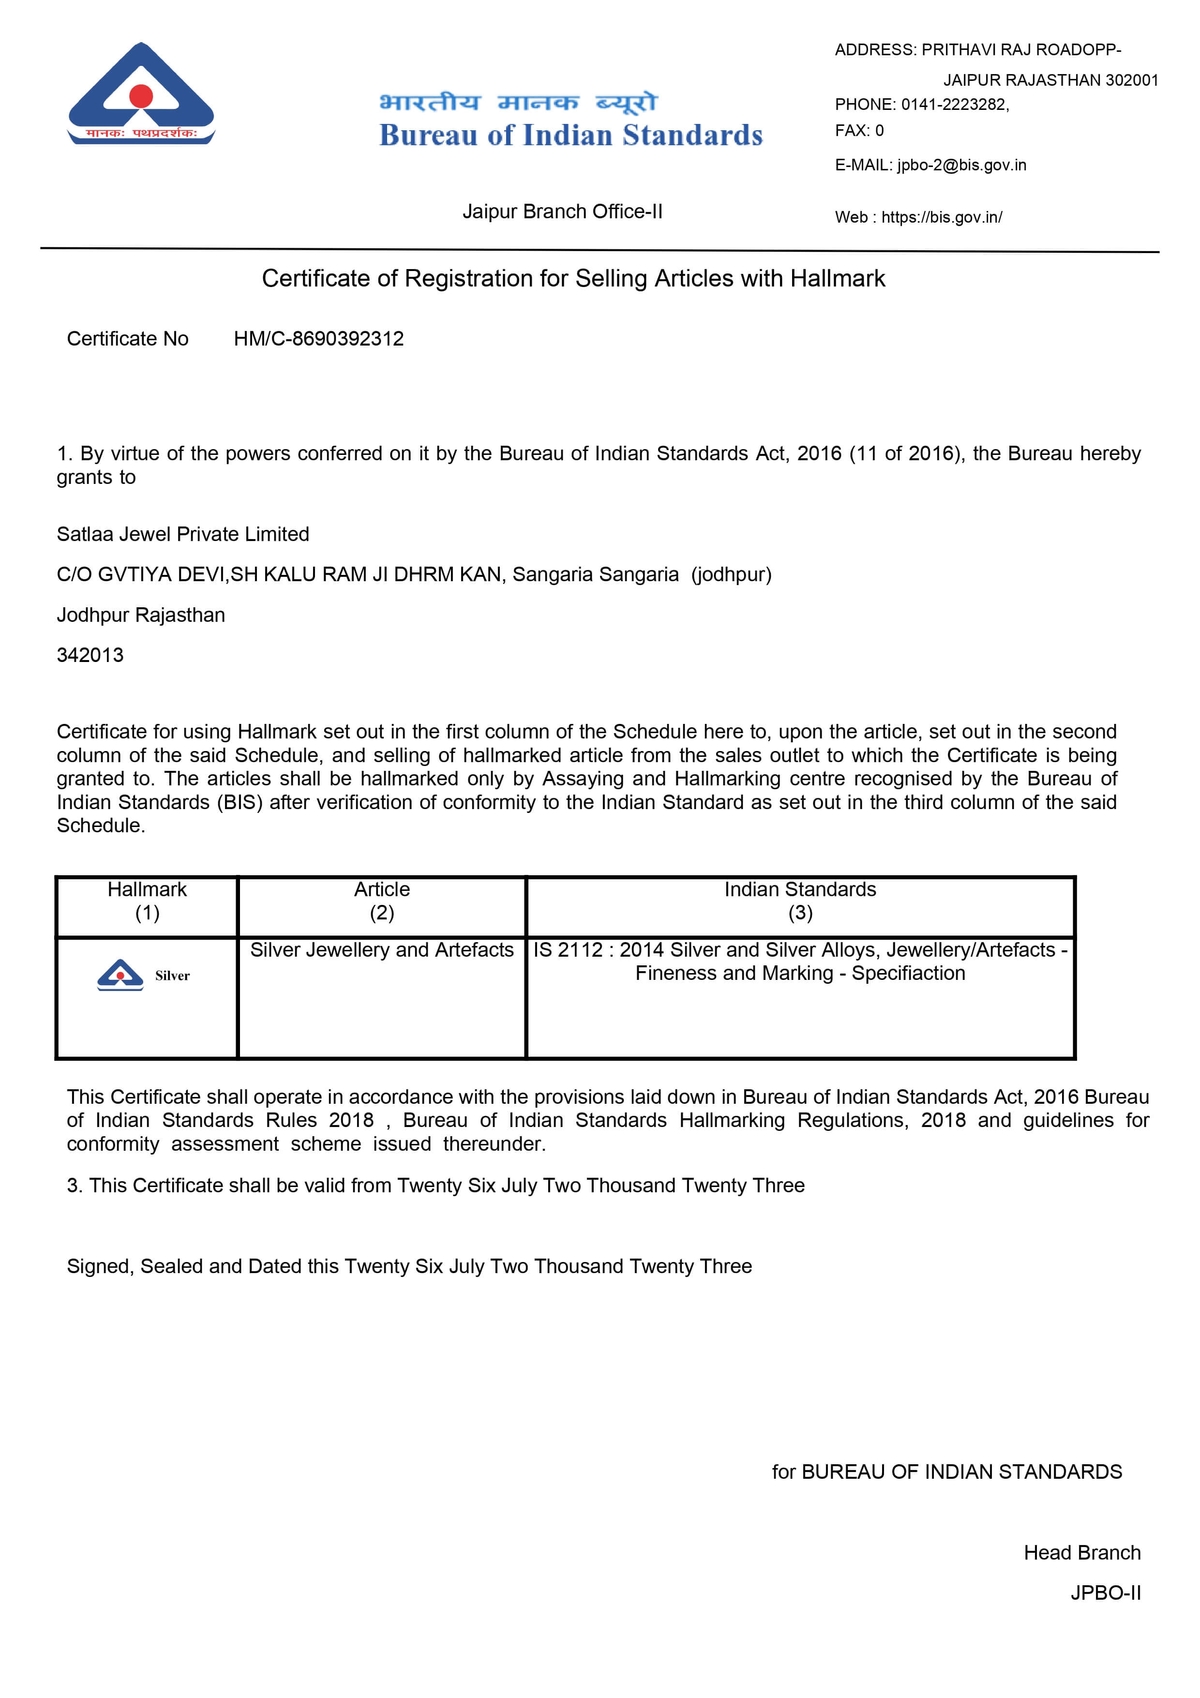 BIS Hallmark Certificate